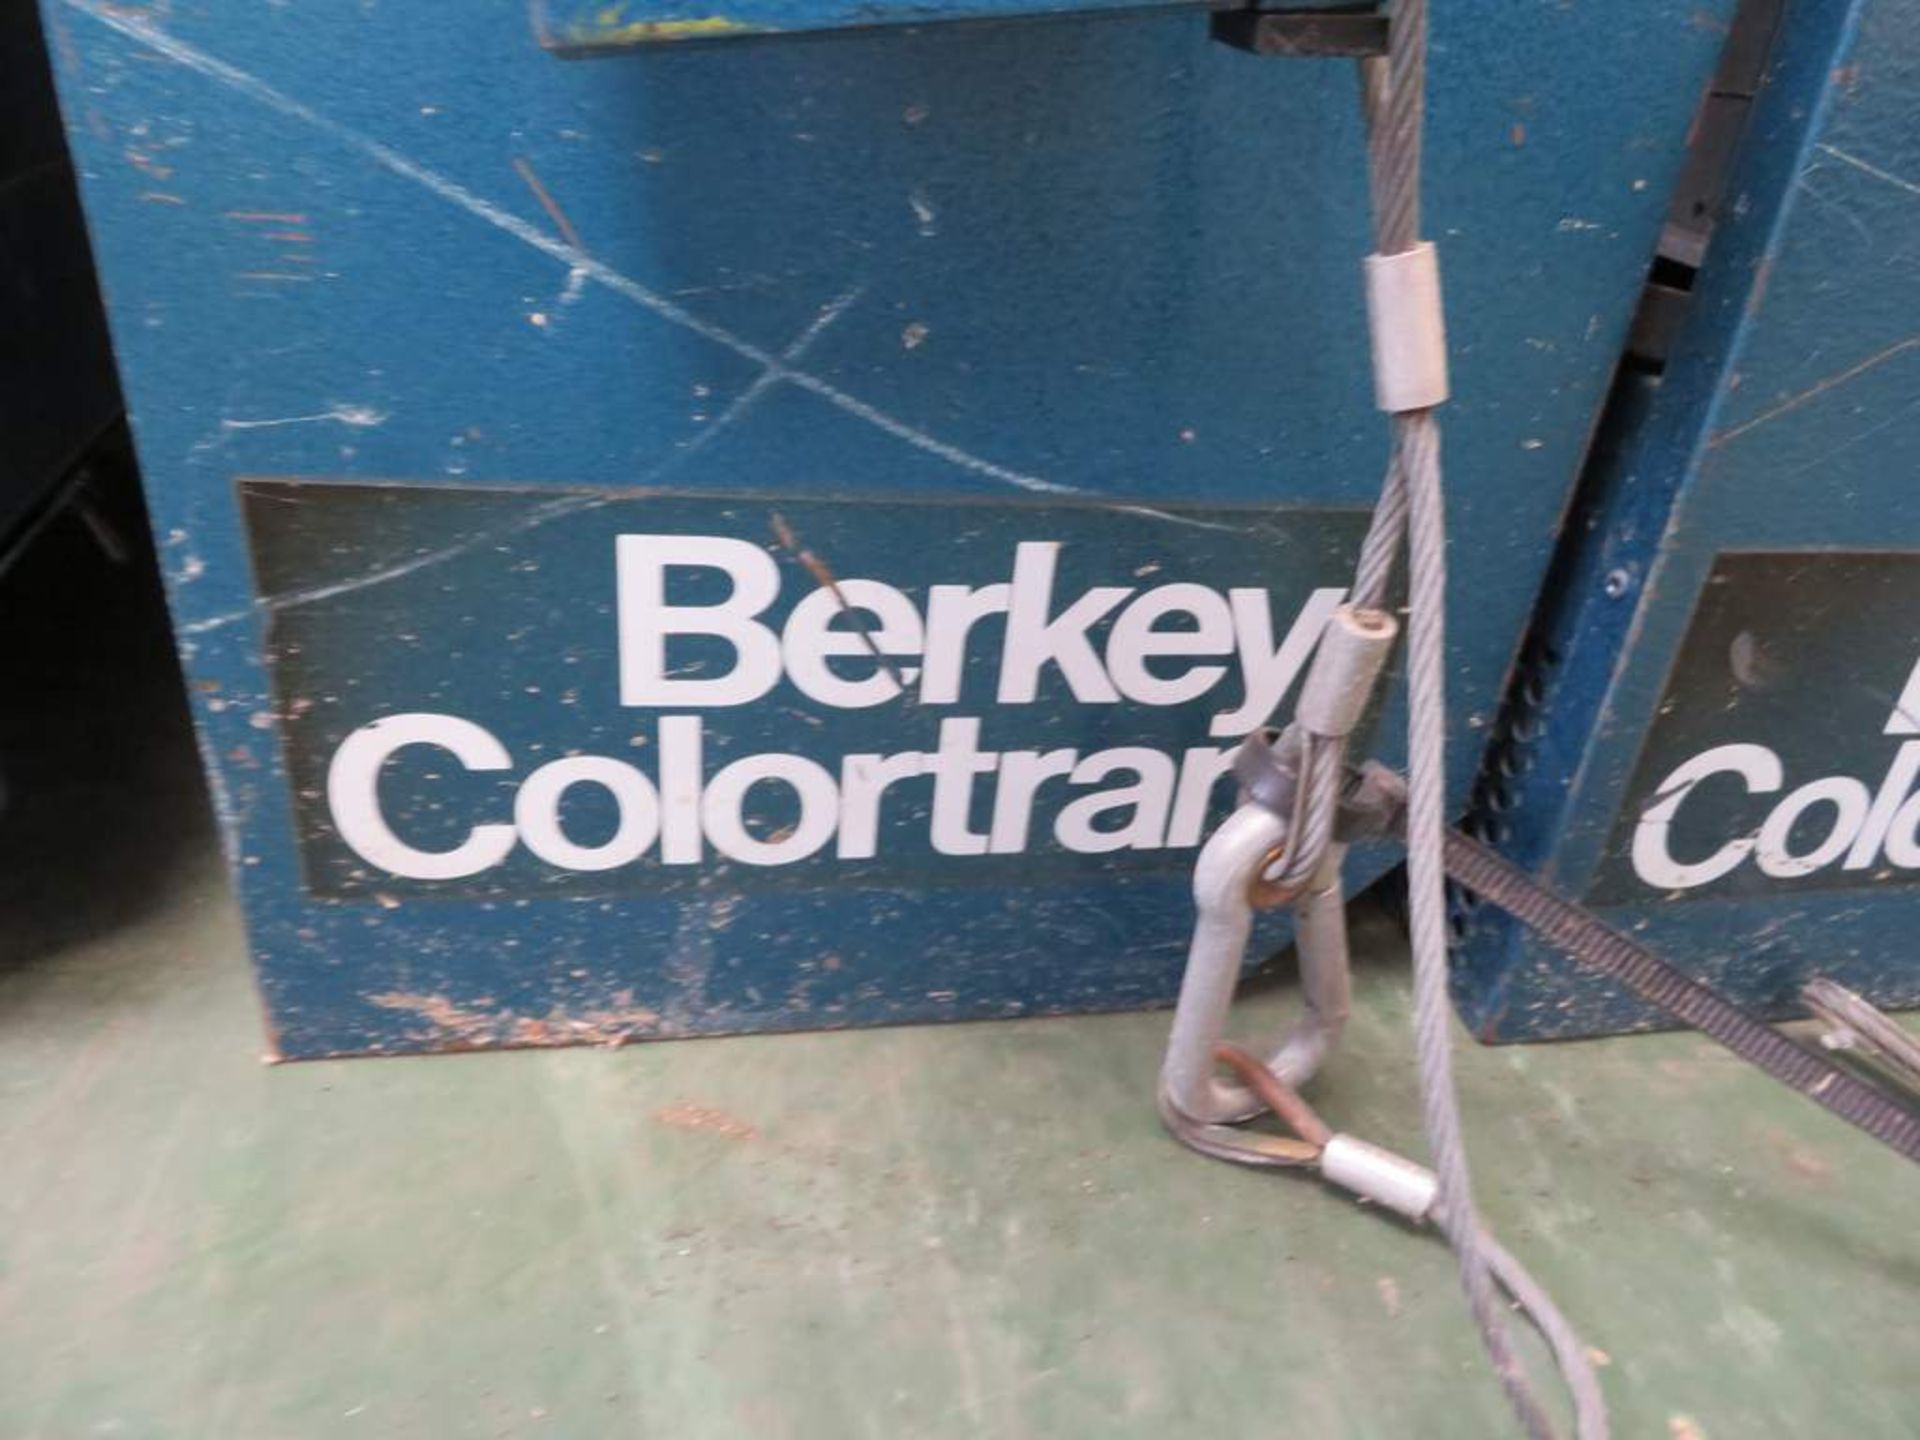 5x Berkey Colortran 5kW Softlight (require replacement lampholders) - Image 4 of 7